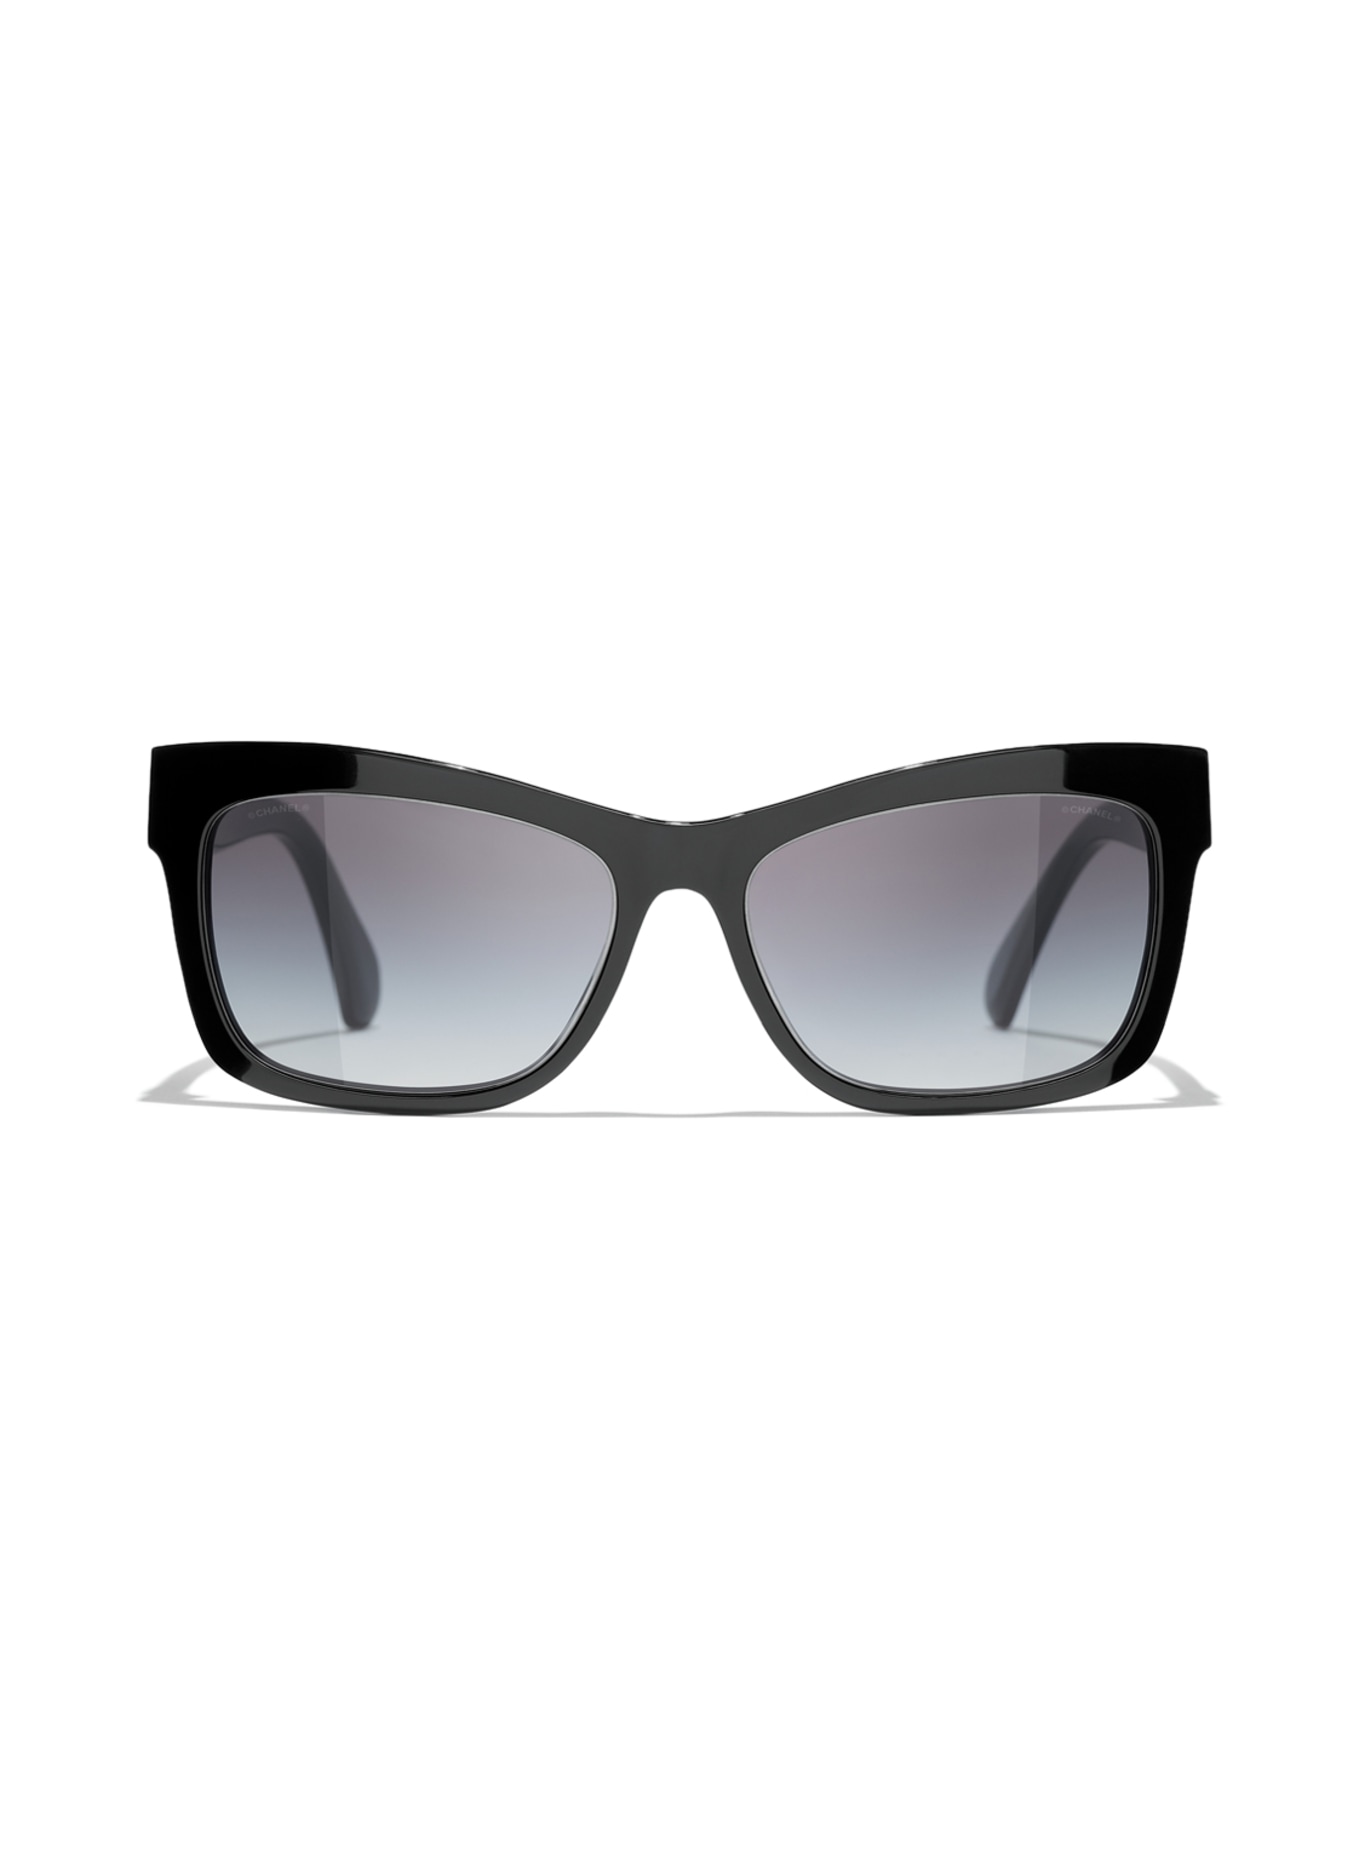 CHANEL Rechteckige Sonnenbrille, Farbe: C622S6 - SCHWARZ/ DUNKELGRAU VERLAUF (Bild 2)